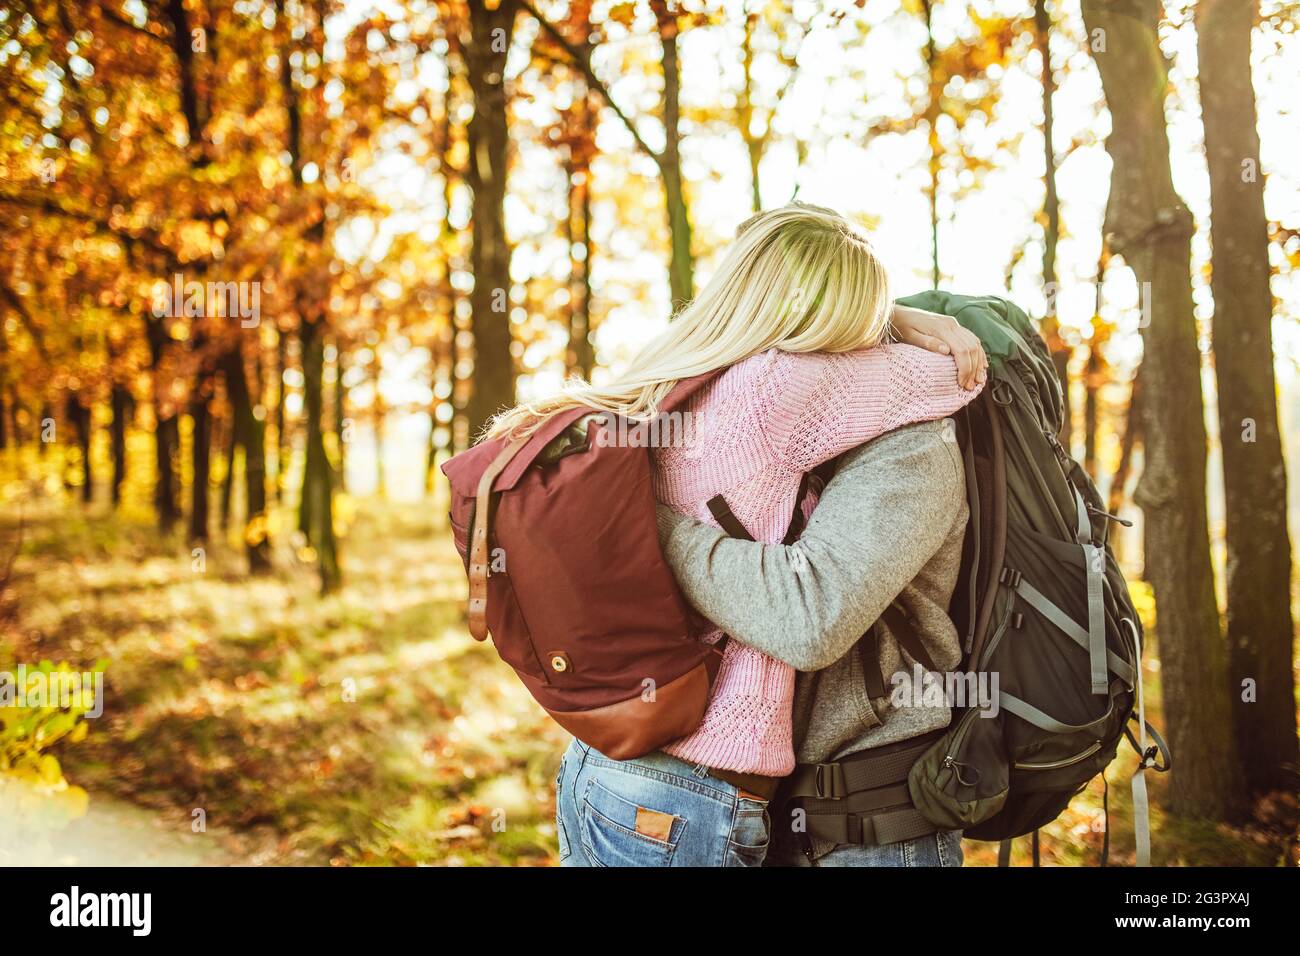 Choisissez entre deux voyageurs, homme et femme, avec des sacs à dos qui s'embrassent tout en se tenant dans la forêt d'automne. Copier l'espace à la dsri gauche Banque D'Images